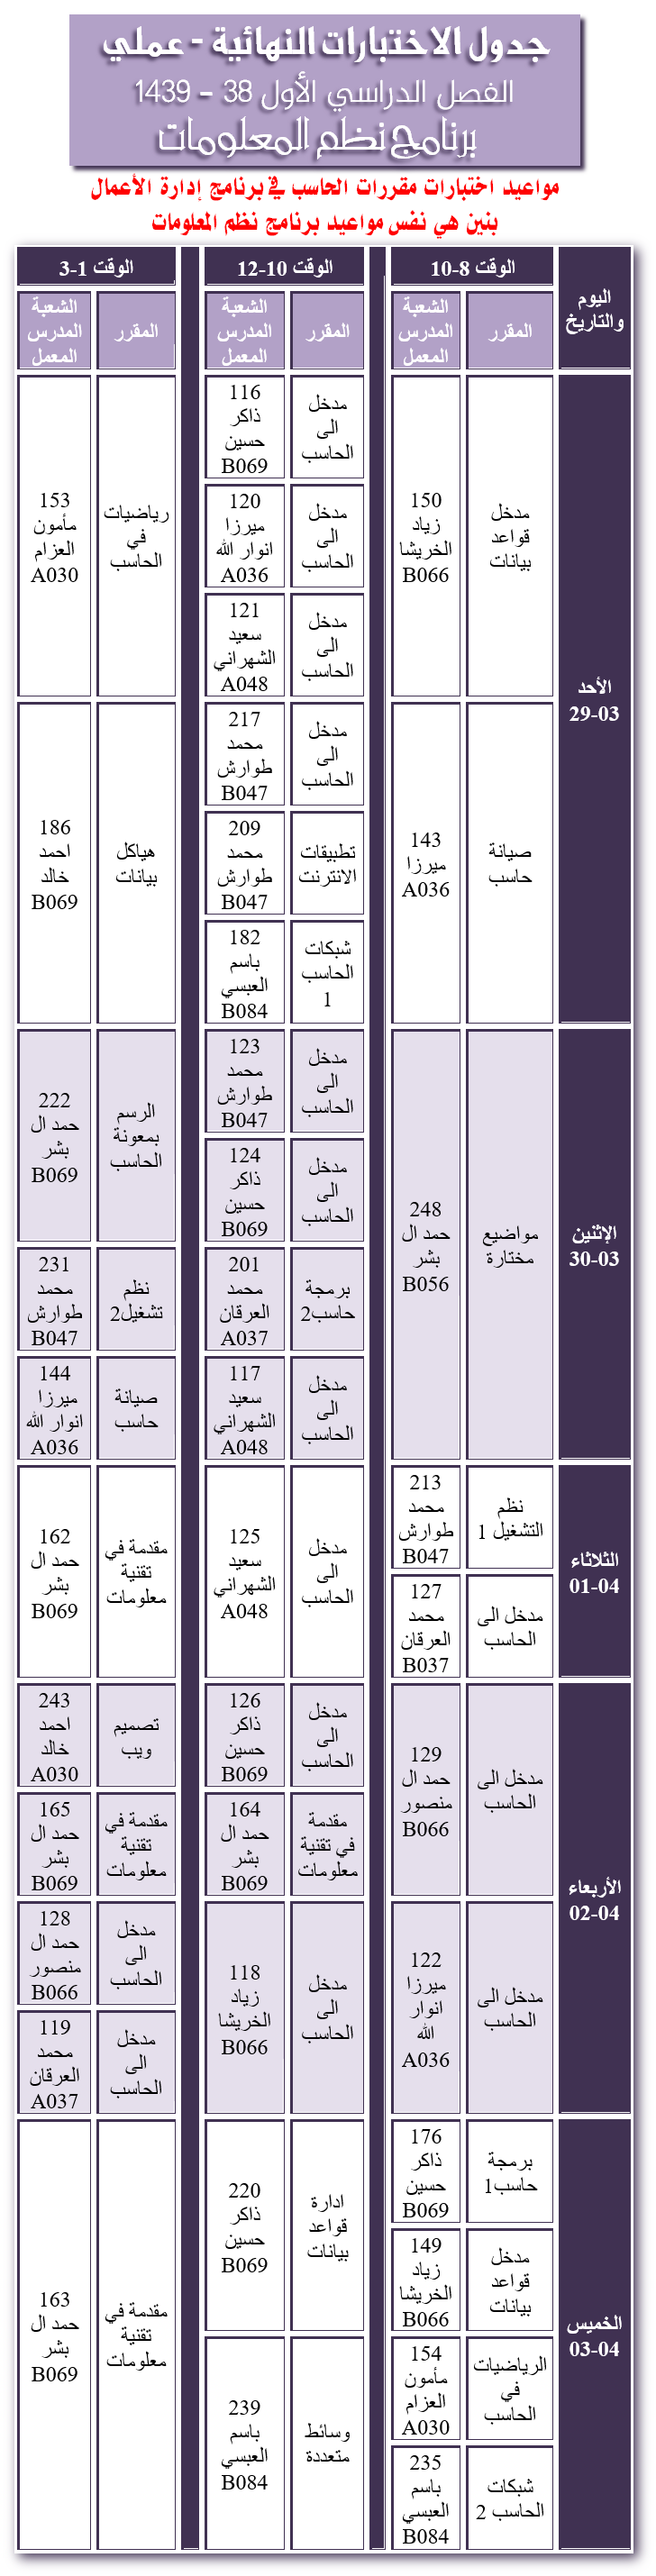 جدول الاختبارات العملية النهائية - نظم المعلومات - الفصل الدراسي الأول 38 - 1439هـ، كلية المجتمع، جامعة نجران